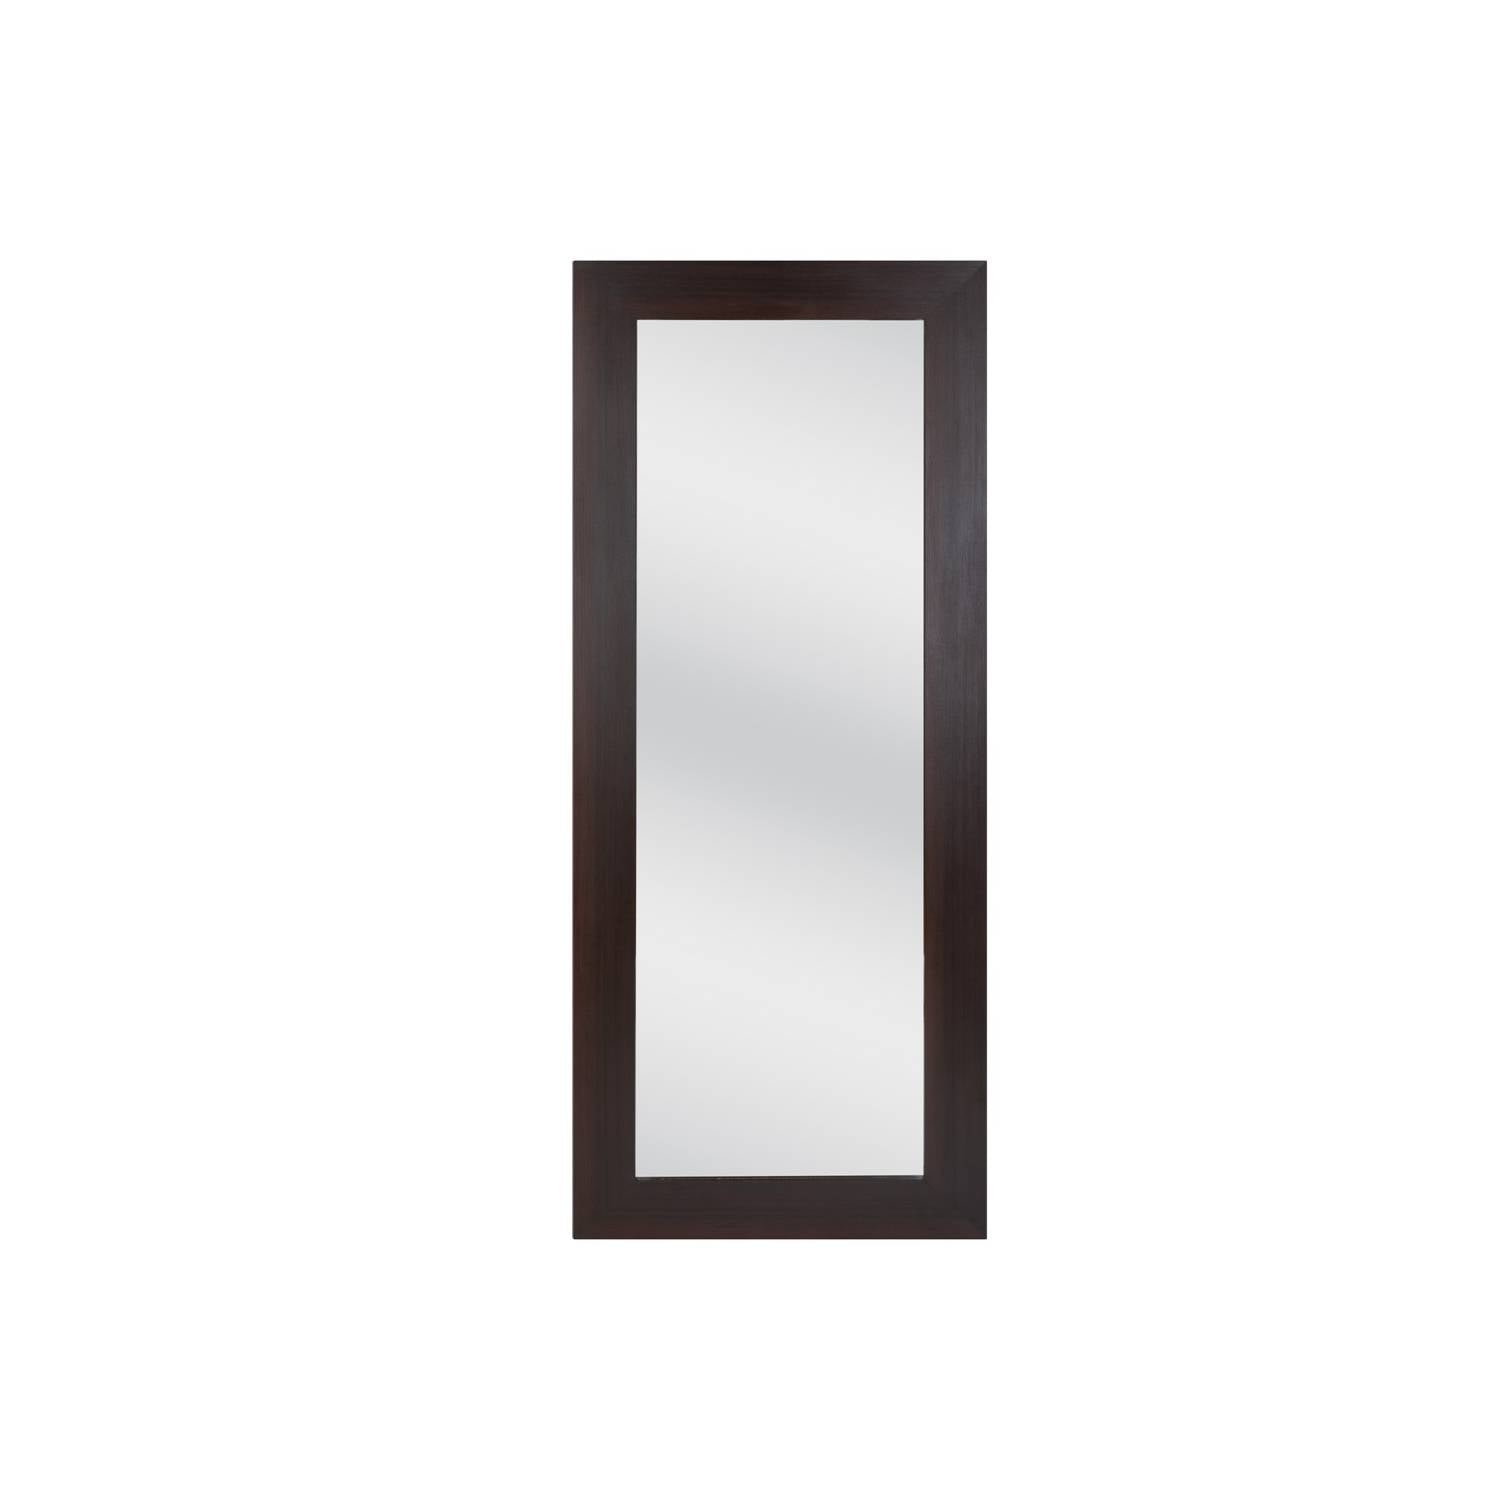 Espejo rectangular 160cm x 60 cm generico [Openbox]